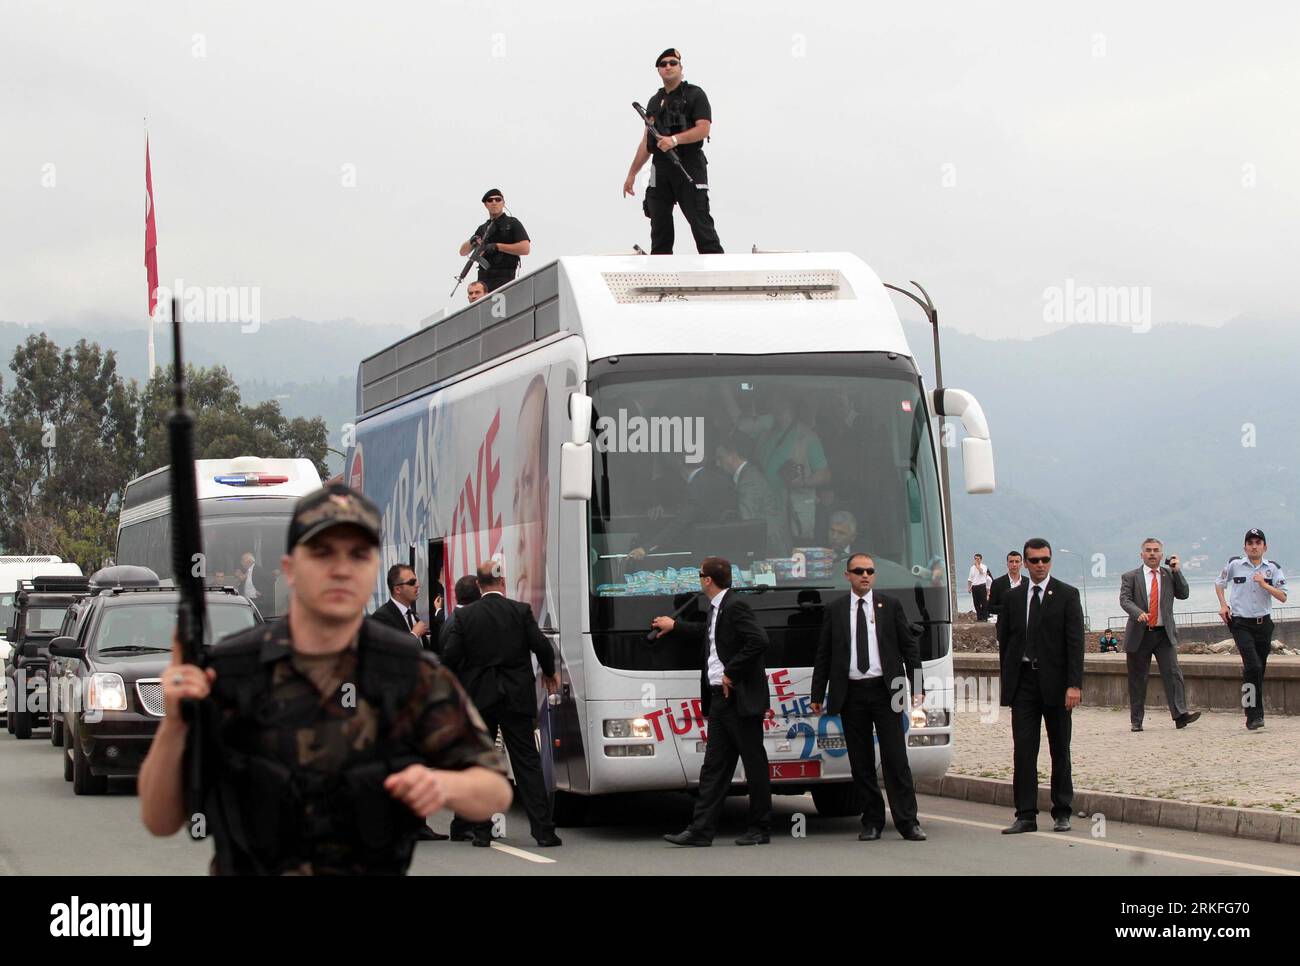 Bildnummer : 55417315 Datum : 31.05.2011 Copyright : imago/Xinhua (110531) -- HOPE (TURQUIE), 31 mai 2011 (Xinhua) -- le personnel de sécurité protège la voiture du Premier ministre turc Tayyip Erdogan pendant les troubles dans la ville de Hopa, Turquie, le 31 mai 2011. Un homme est mort d'une crise cardiaque et un agent de sécurité a été grièvement blessé dans des troubles de rue alors qu'Erdogan s'apprêtait à s'adresser à un rassemblement électoral dans le nord du pays mardi, selon les médias. (Xinhua/Anadolu) (wjd) TURQUIE-RASSEMBLEMENT ÉLECTORAL-TROUBLES PUBLICATIONxNOTxINxCHN Politik Wahl Parlamentswahl Türkei Unruhen Randale kbdig xng 2011 quer premi Banque D'Images